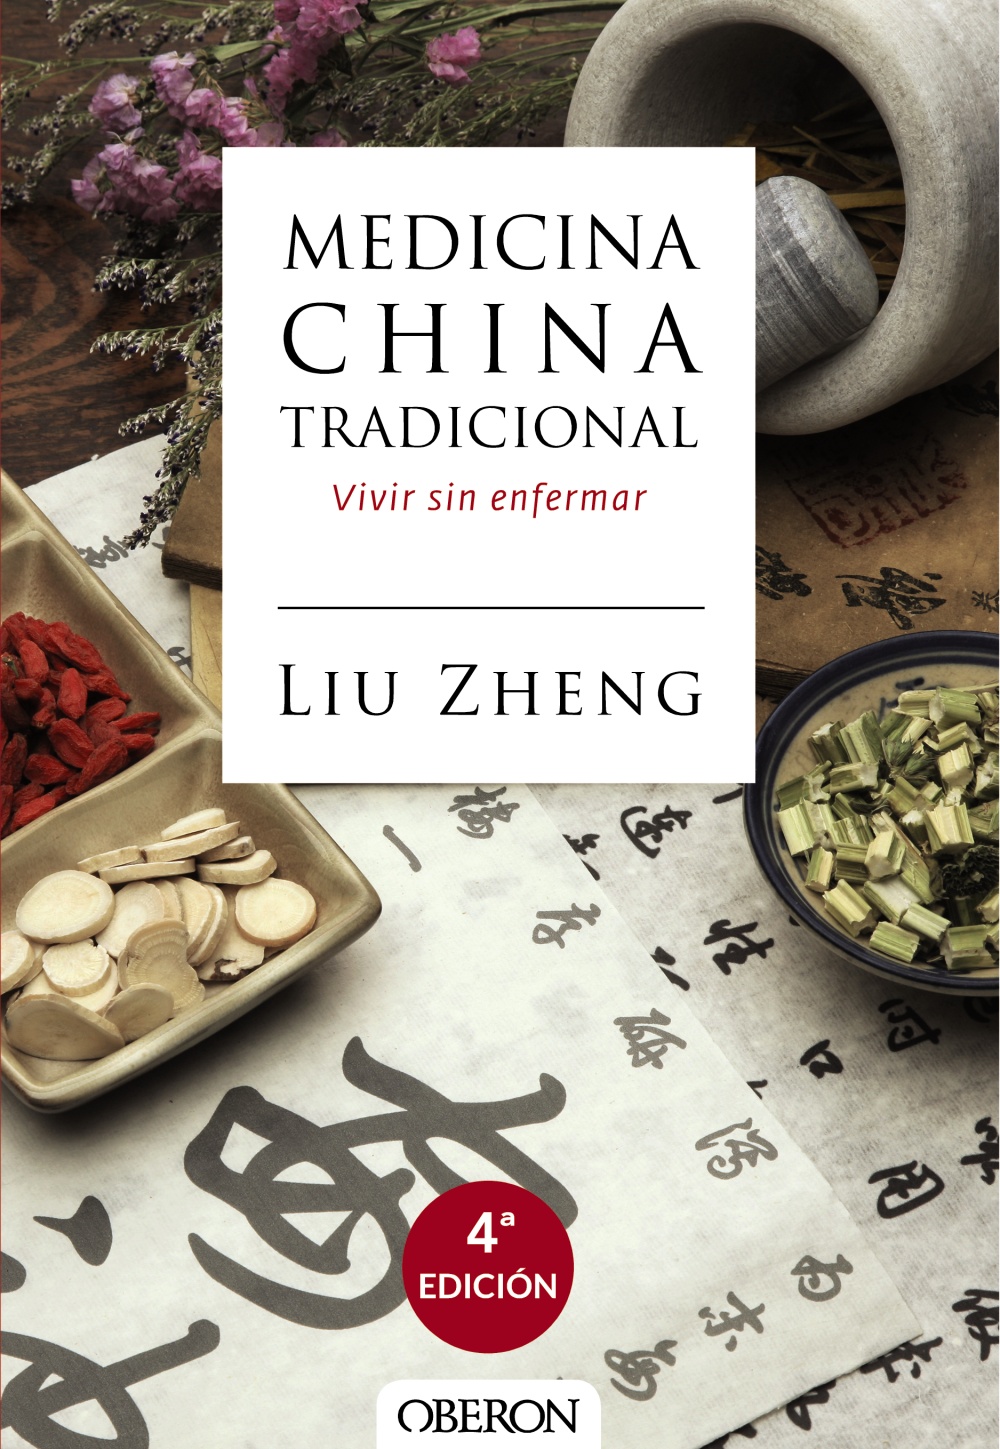 Medicina China tradicional "Vivir sin enfermar"